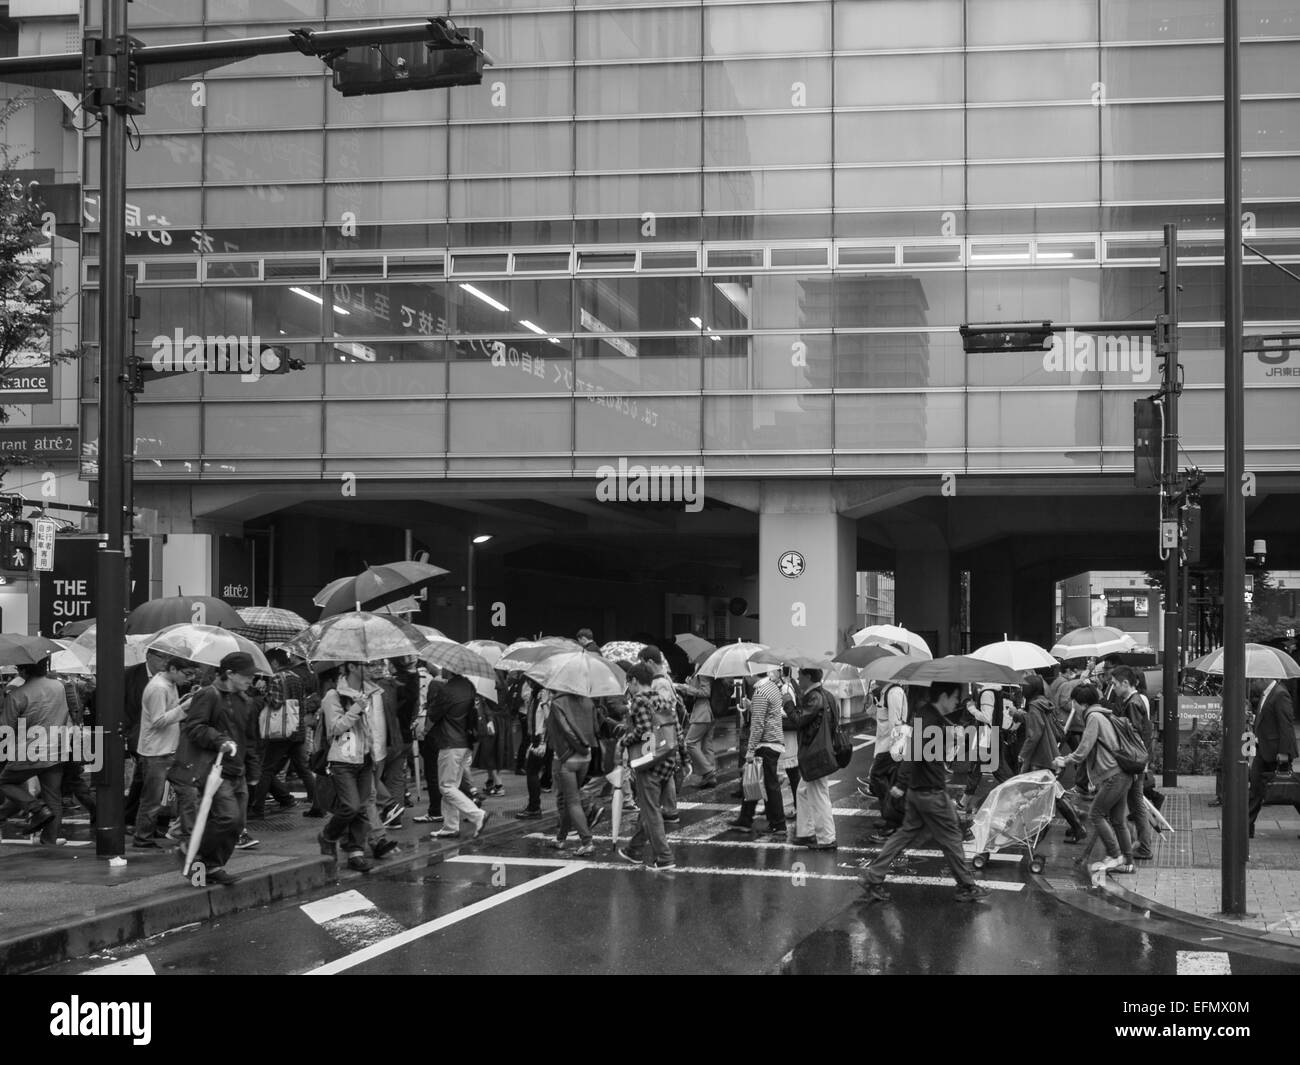 Immagine in bianco e nero di persone a piedi in strada con ombrelli aperti sotto la pioggia Foto Stock